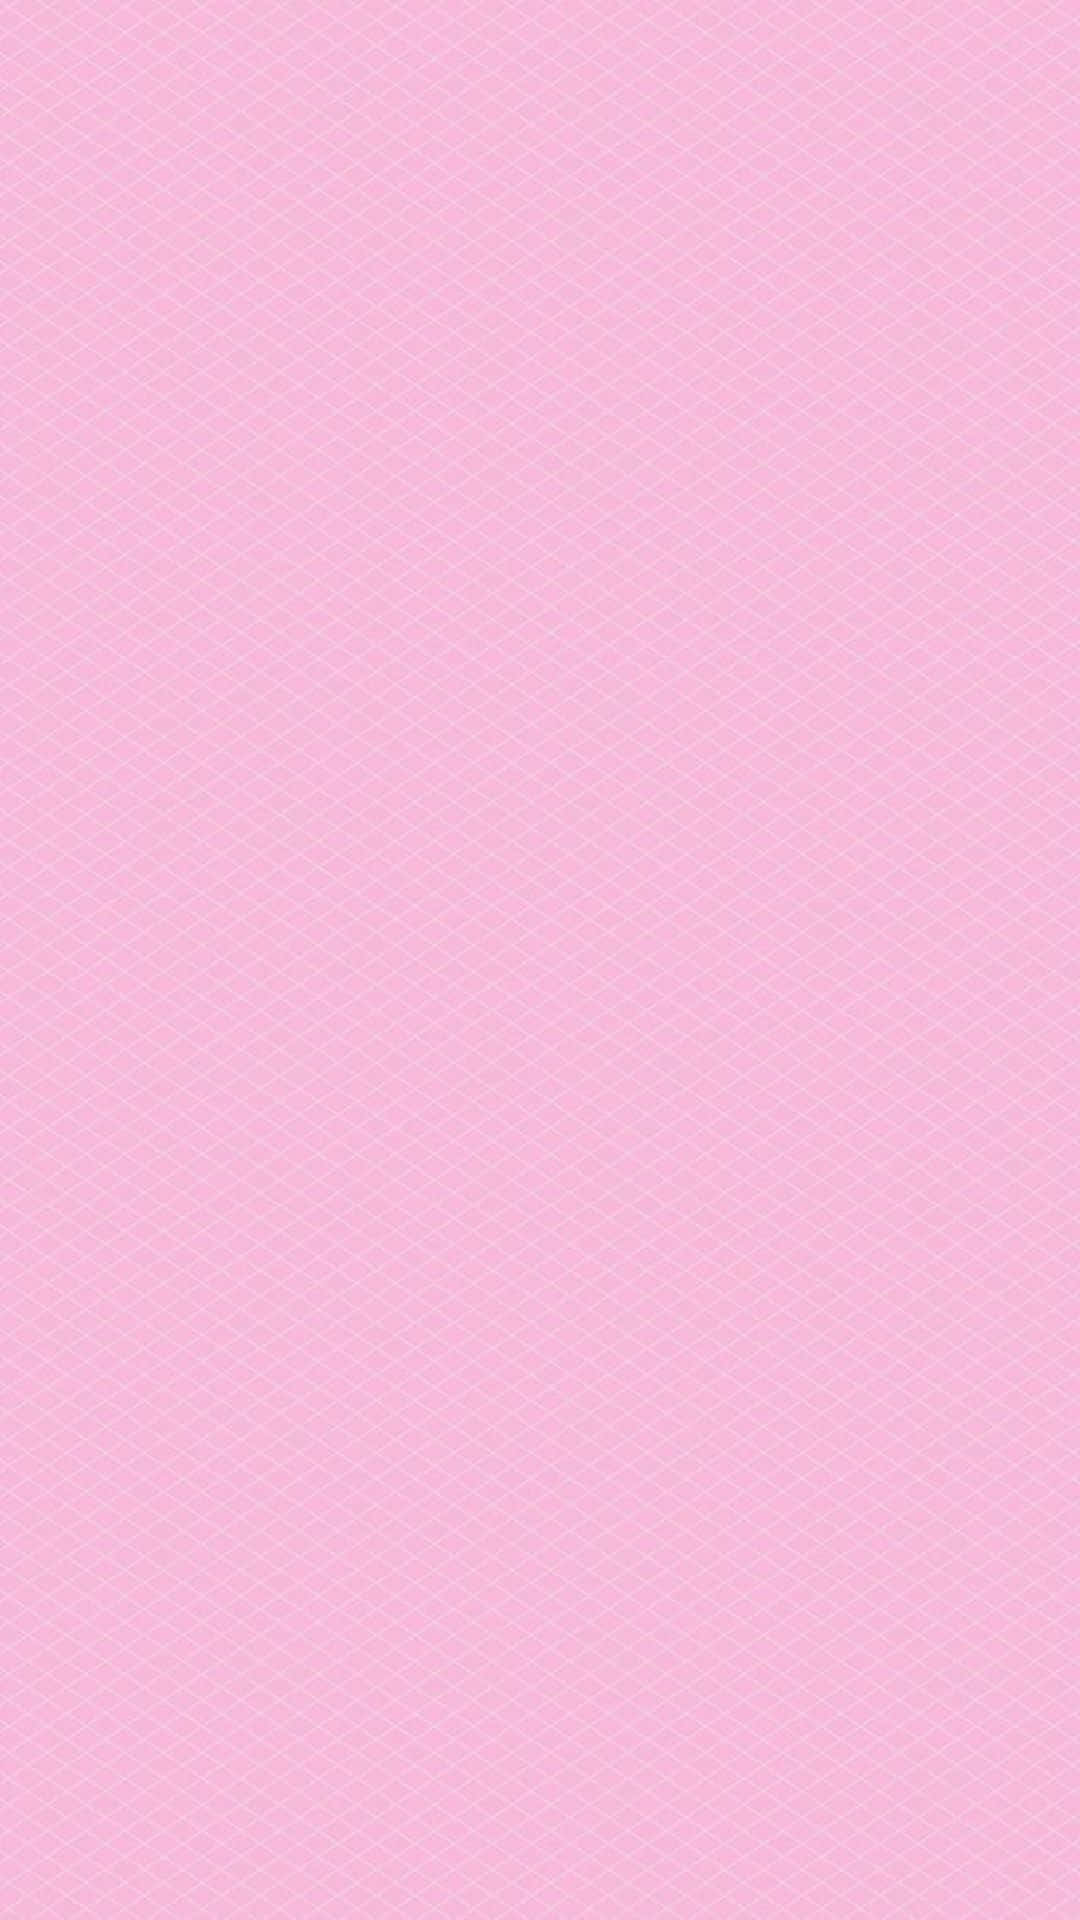 Untono De Color Rosa Brillante Sólido Capturado Contra Un Fondo Gris Claro. Fondo de pantalla